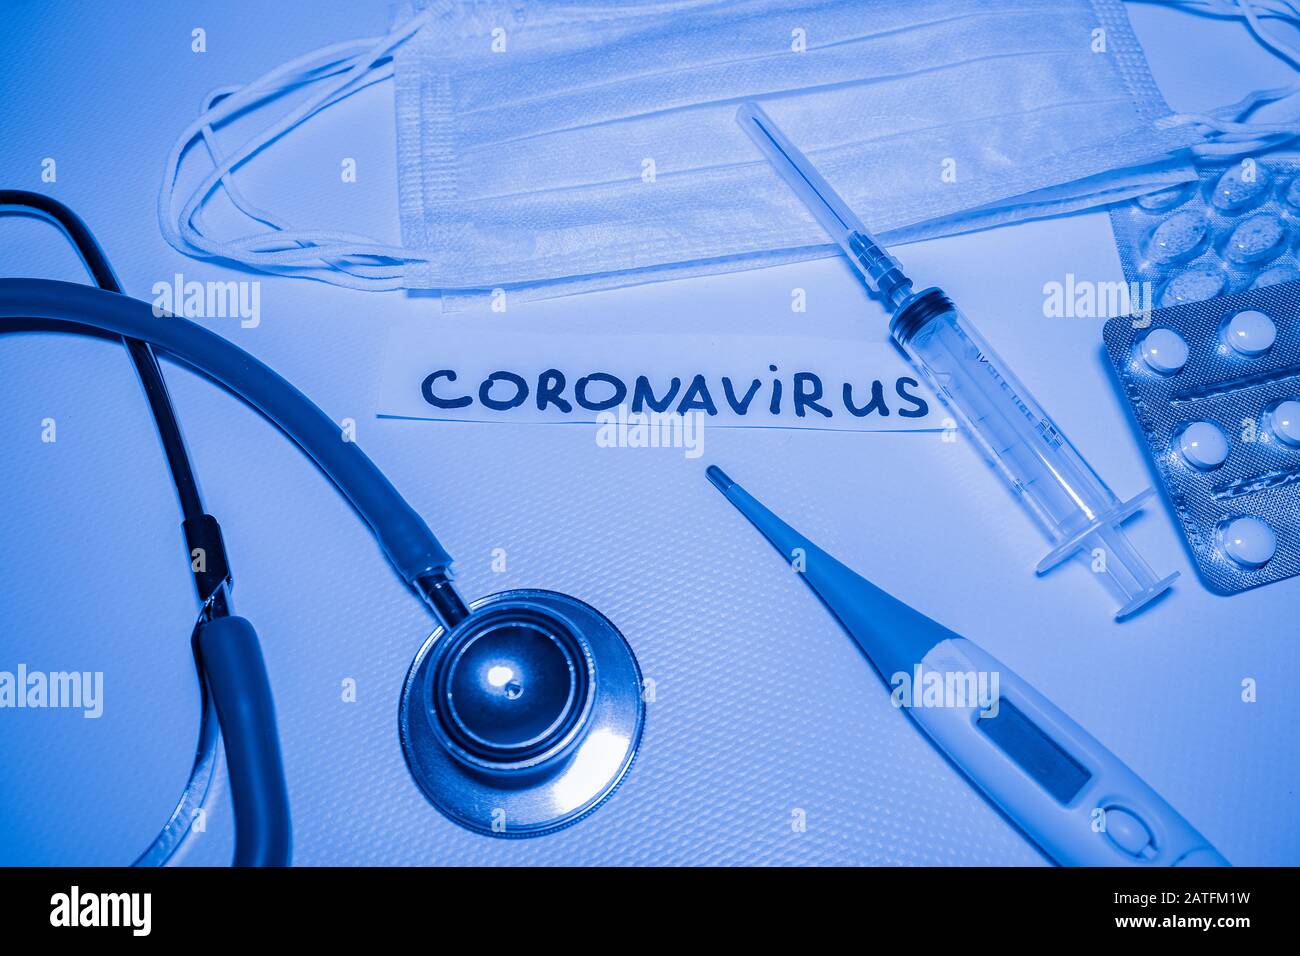 Sfondo blu medico con iscrizione coronavirus, stetoscopio, pillole, termometro, siringa Foto Stock